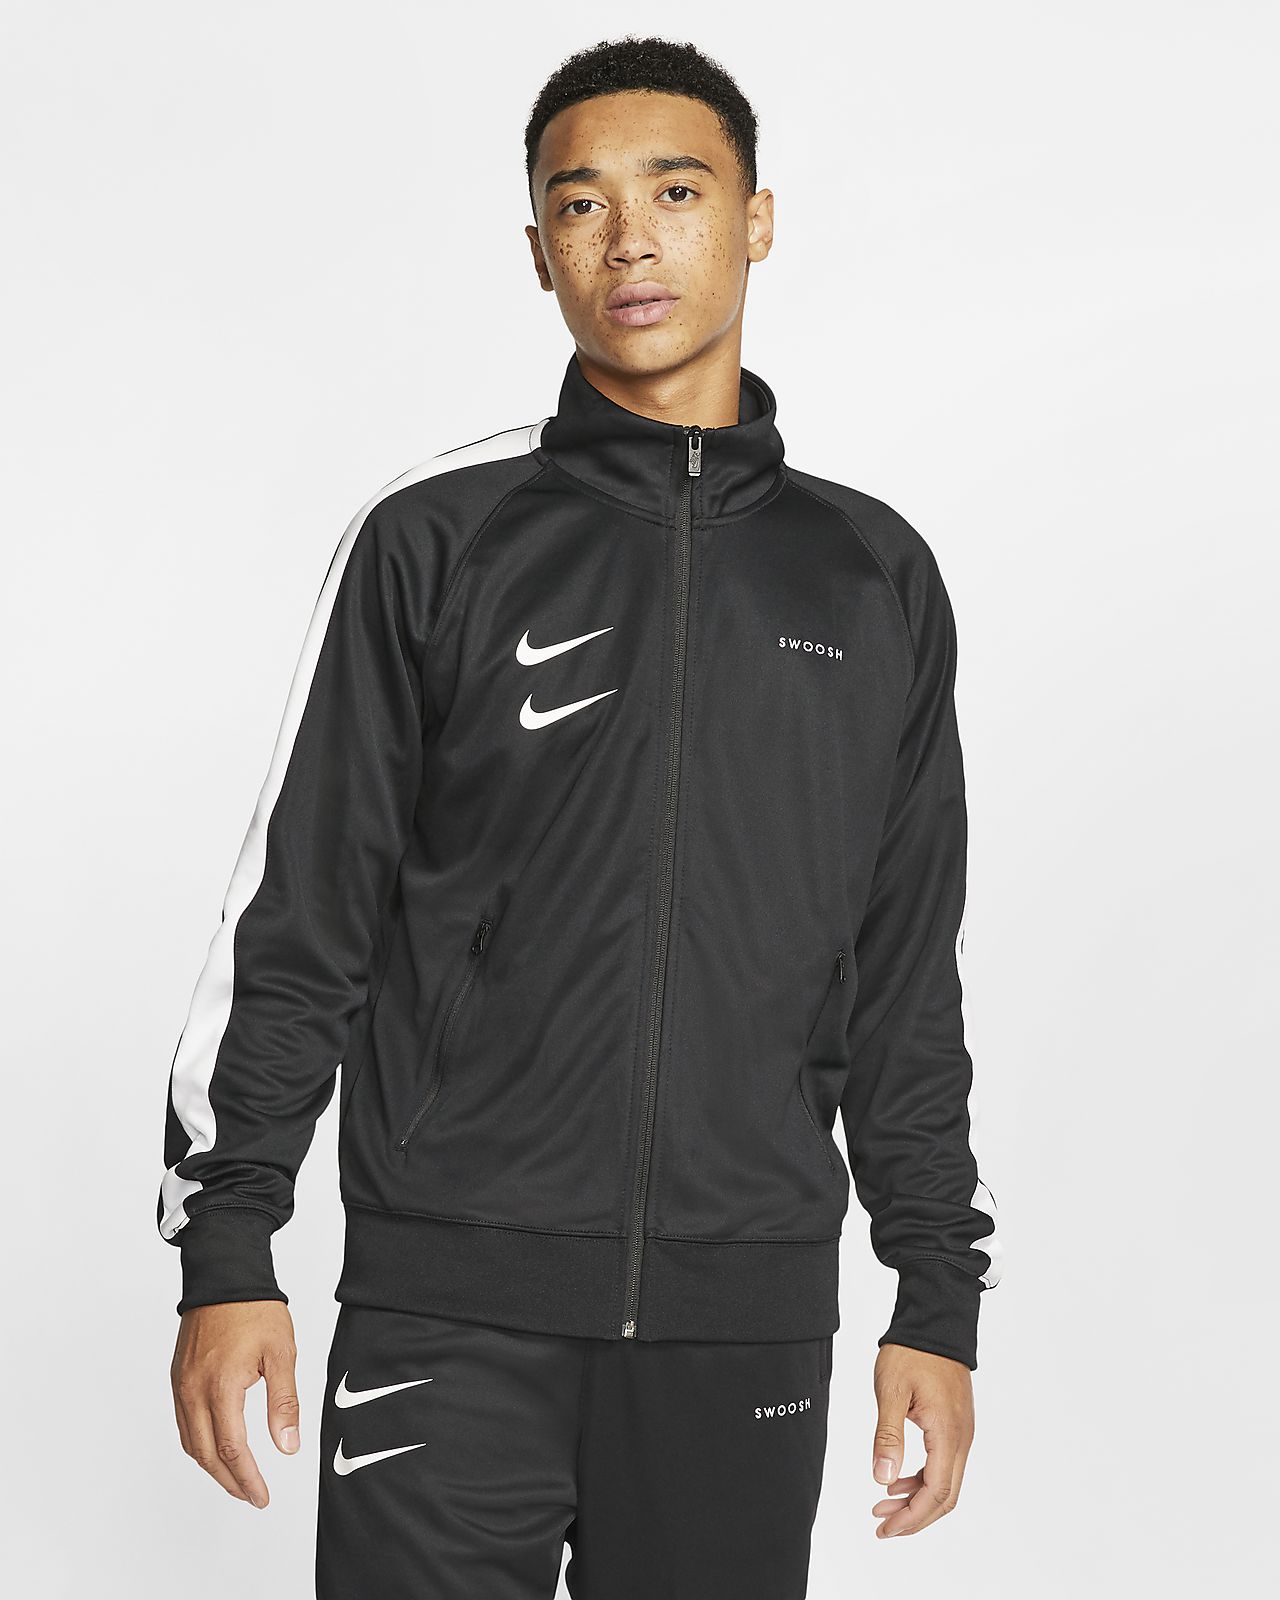 Nike Sportswear Swoosh Men's Jacket. Nike LU